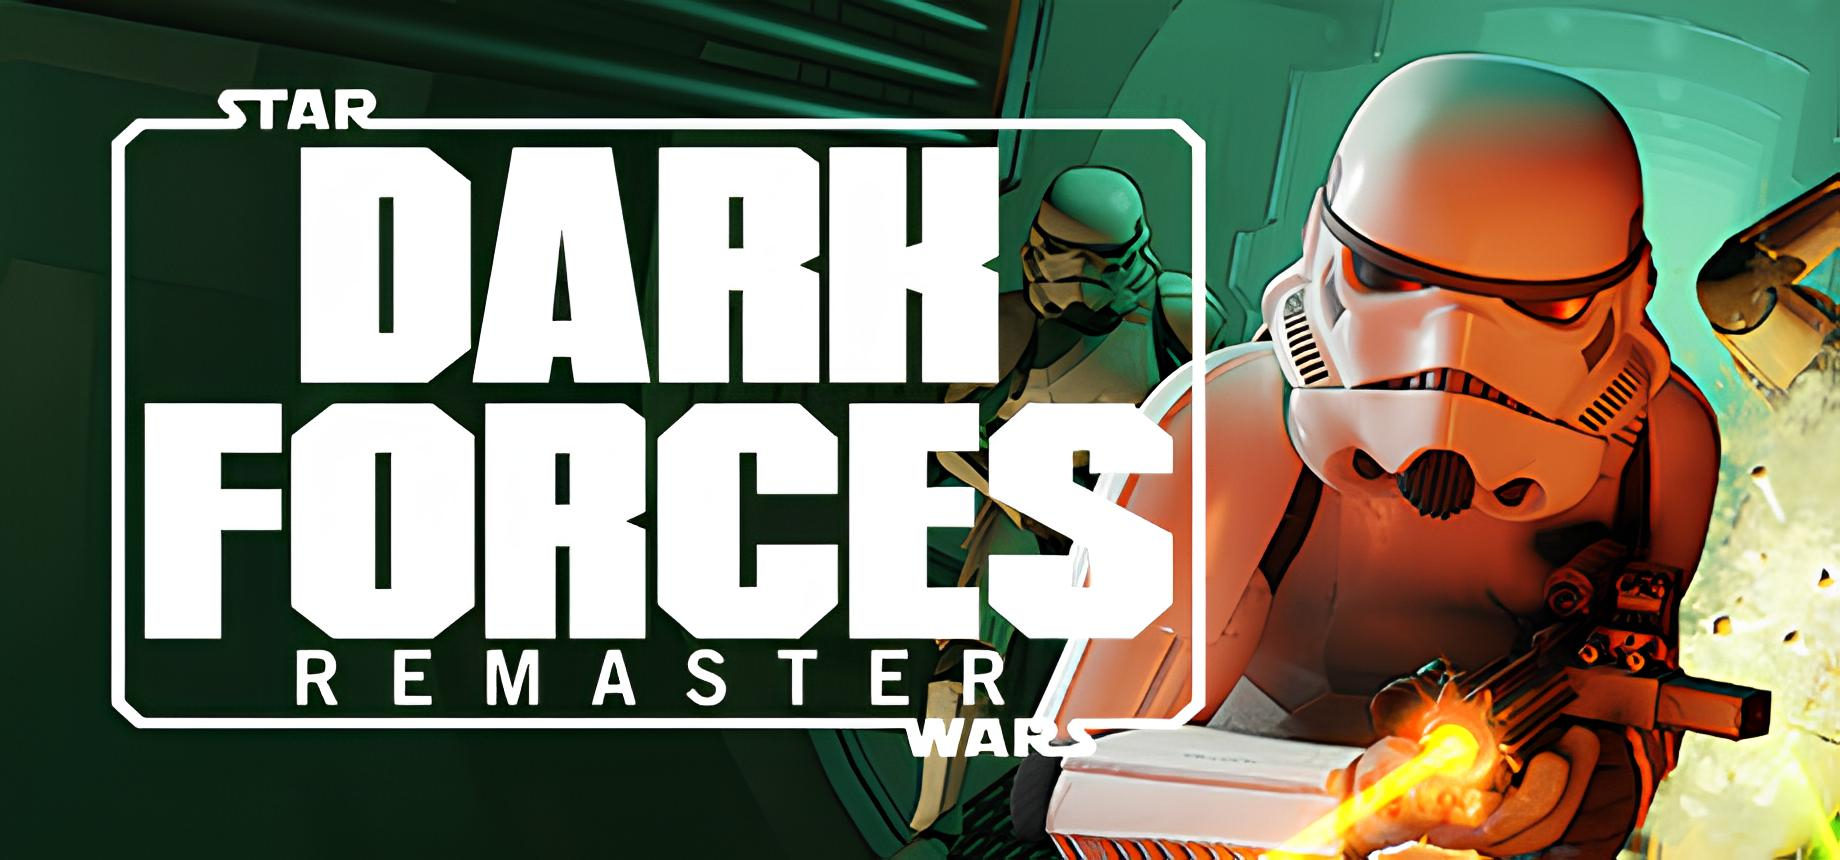 Обложка игры Star Wars: Dark Forces Remaster